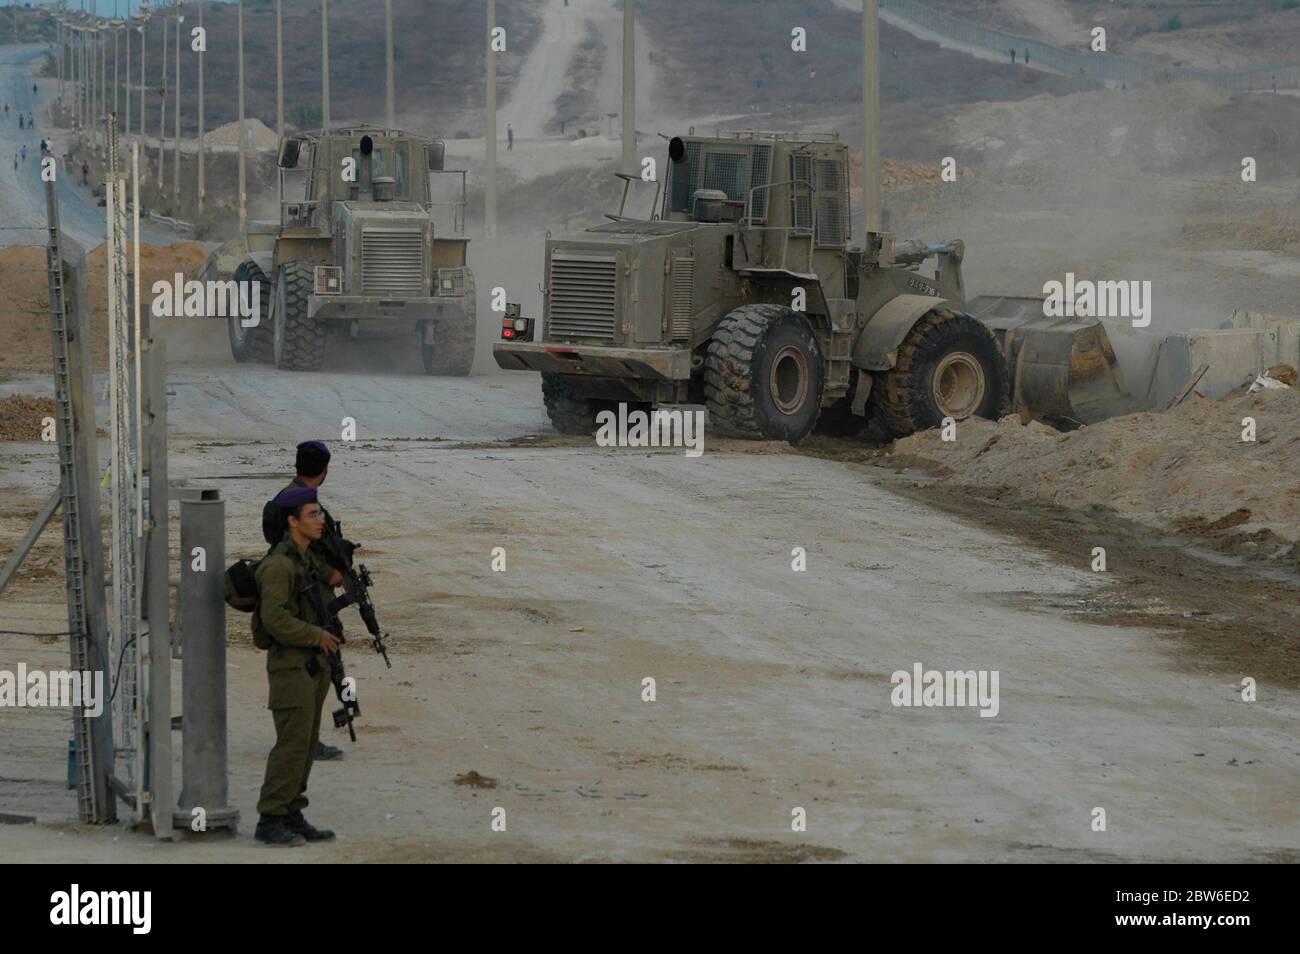 Des bulldozers militaires israéliens bloquent la route peu après que le convoi blindé quitte la bande de Gaza par le passage de Kissufim qui a conduit au bloc 'Gush Katif' des colonies israéliennes dans la bande de Gaza alors qu'Israël met fin à son occupation du territoire palestinien de 38 ans. Banque D'Images